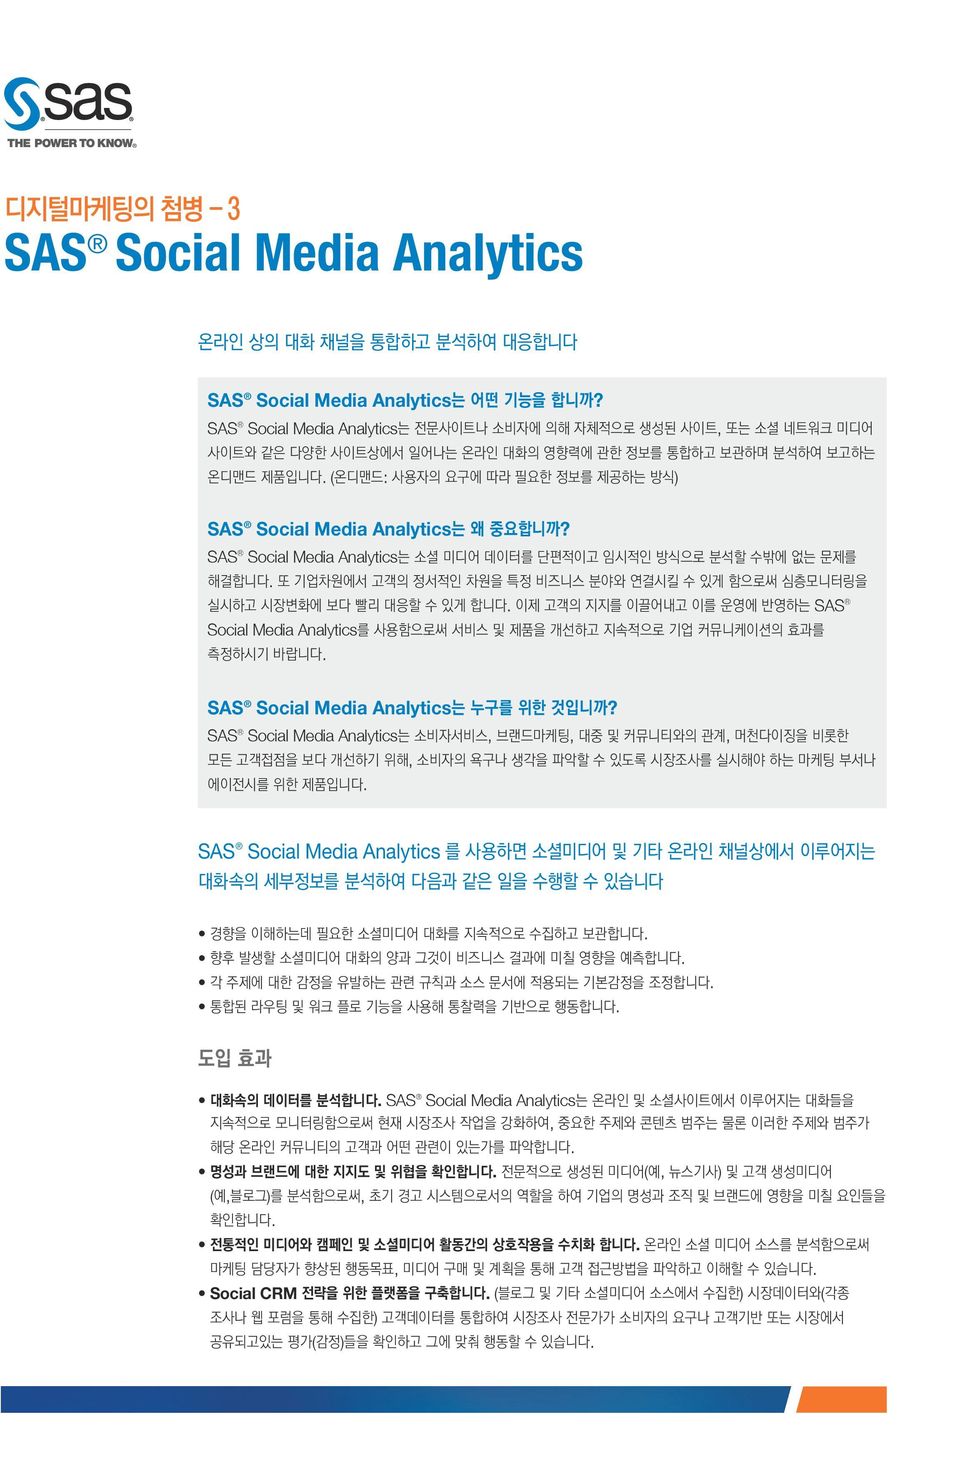 SAS Social Media Analytics 를 사용하면 소셜미디어 및 기타 온라인 채널상에서 이루어지는 대화속의 세부정보를 분석하여 다음과 같은 일을 수행할 수 있습니다.